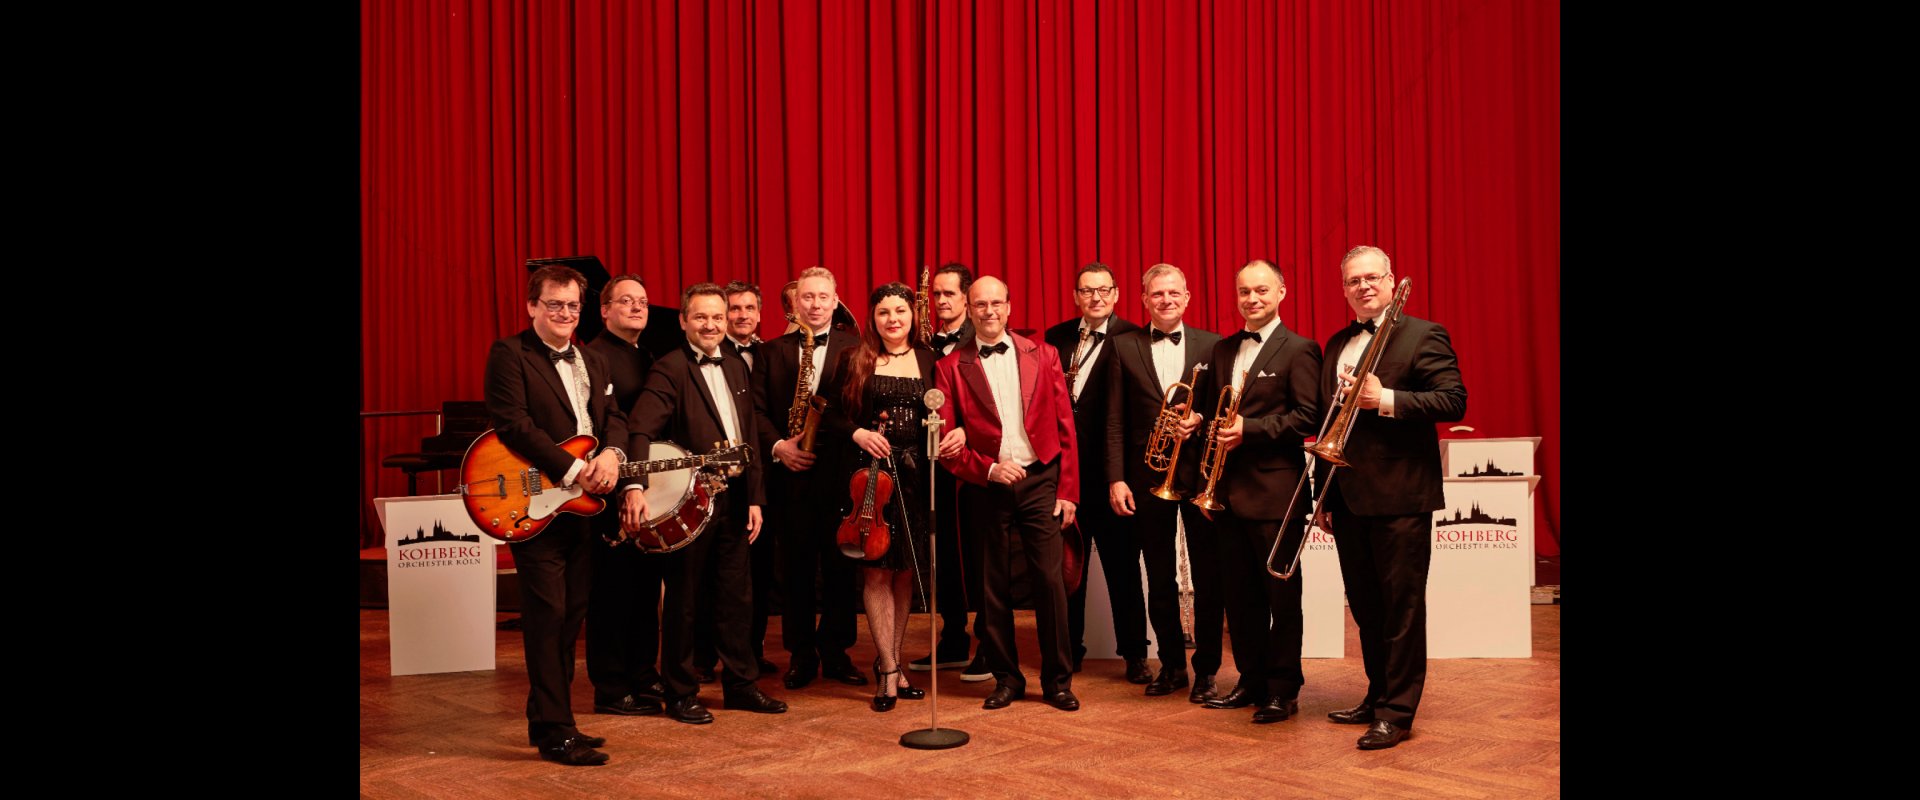 Das Kohberg Orchester